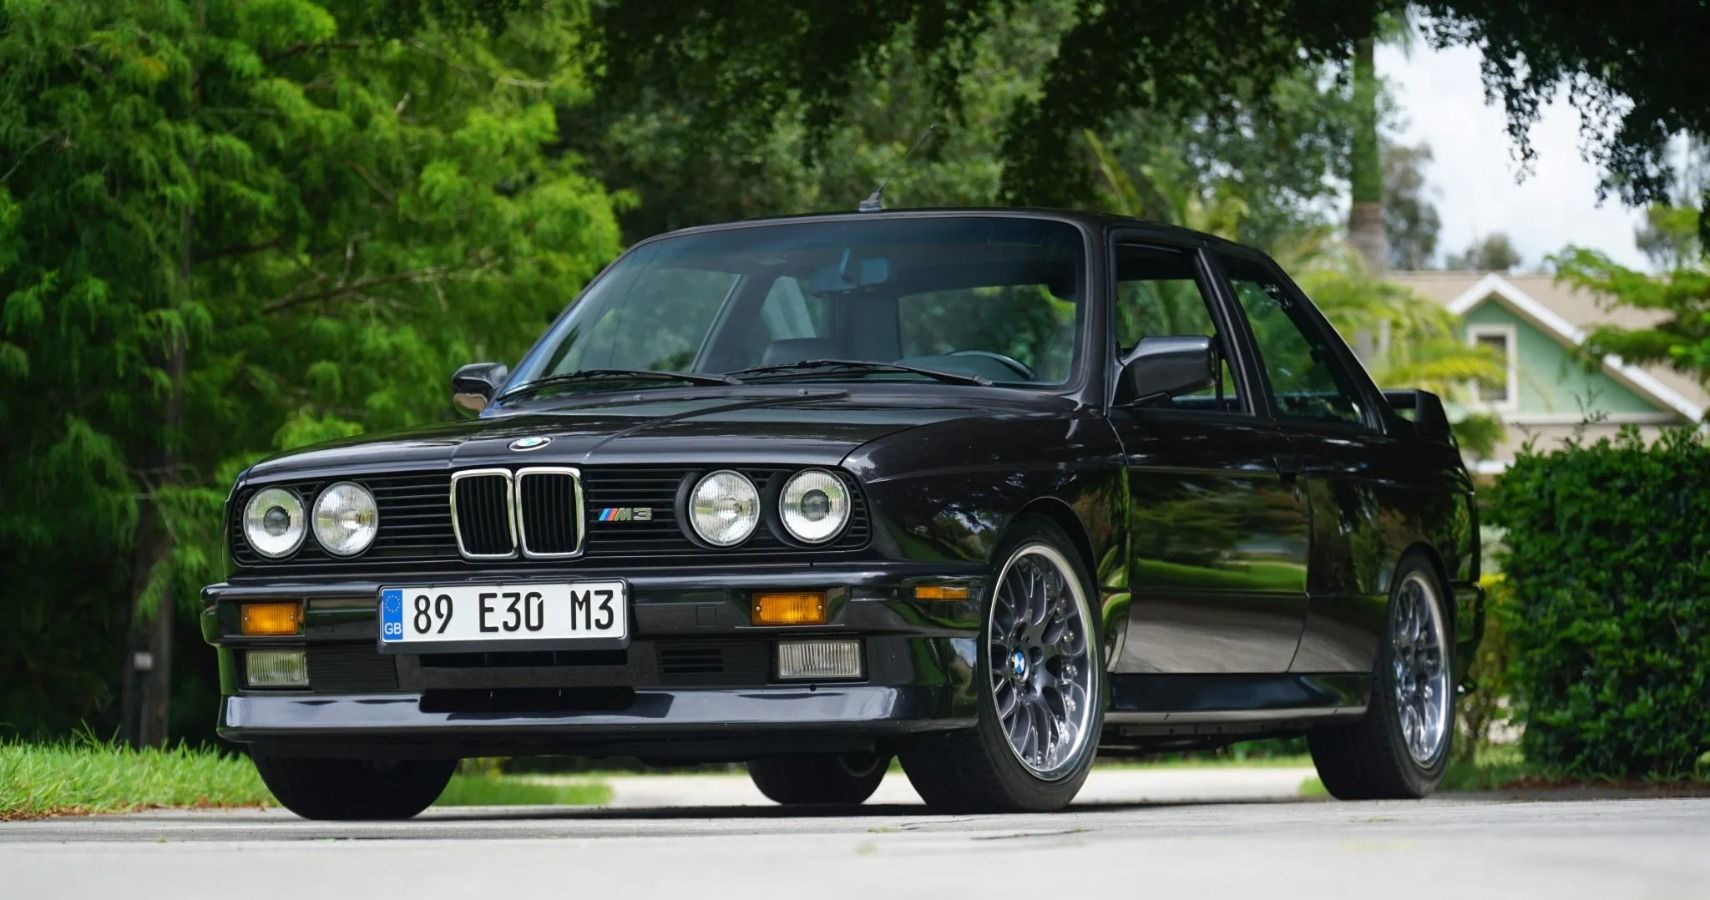 Black 1989 E30 M3 parked